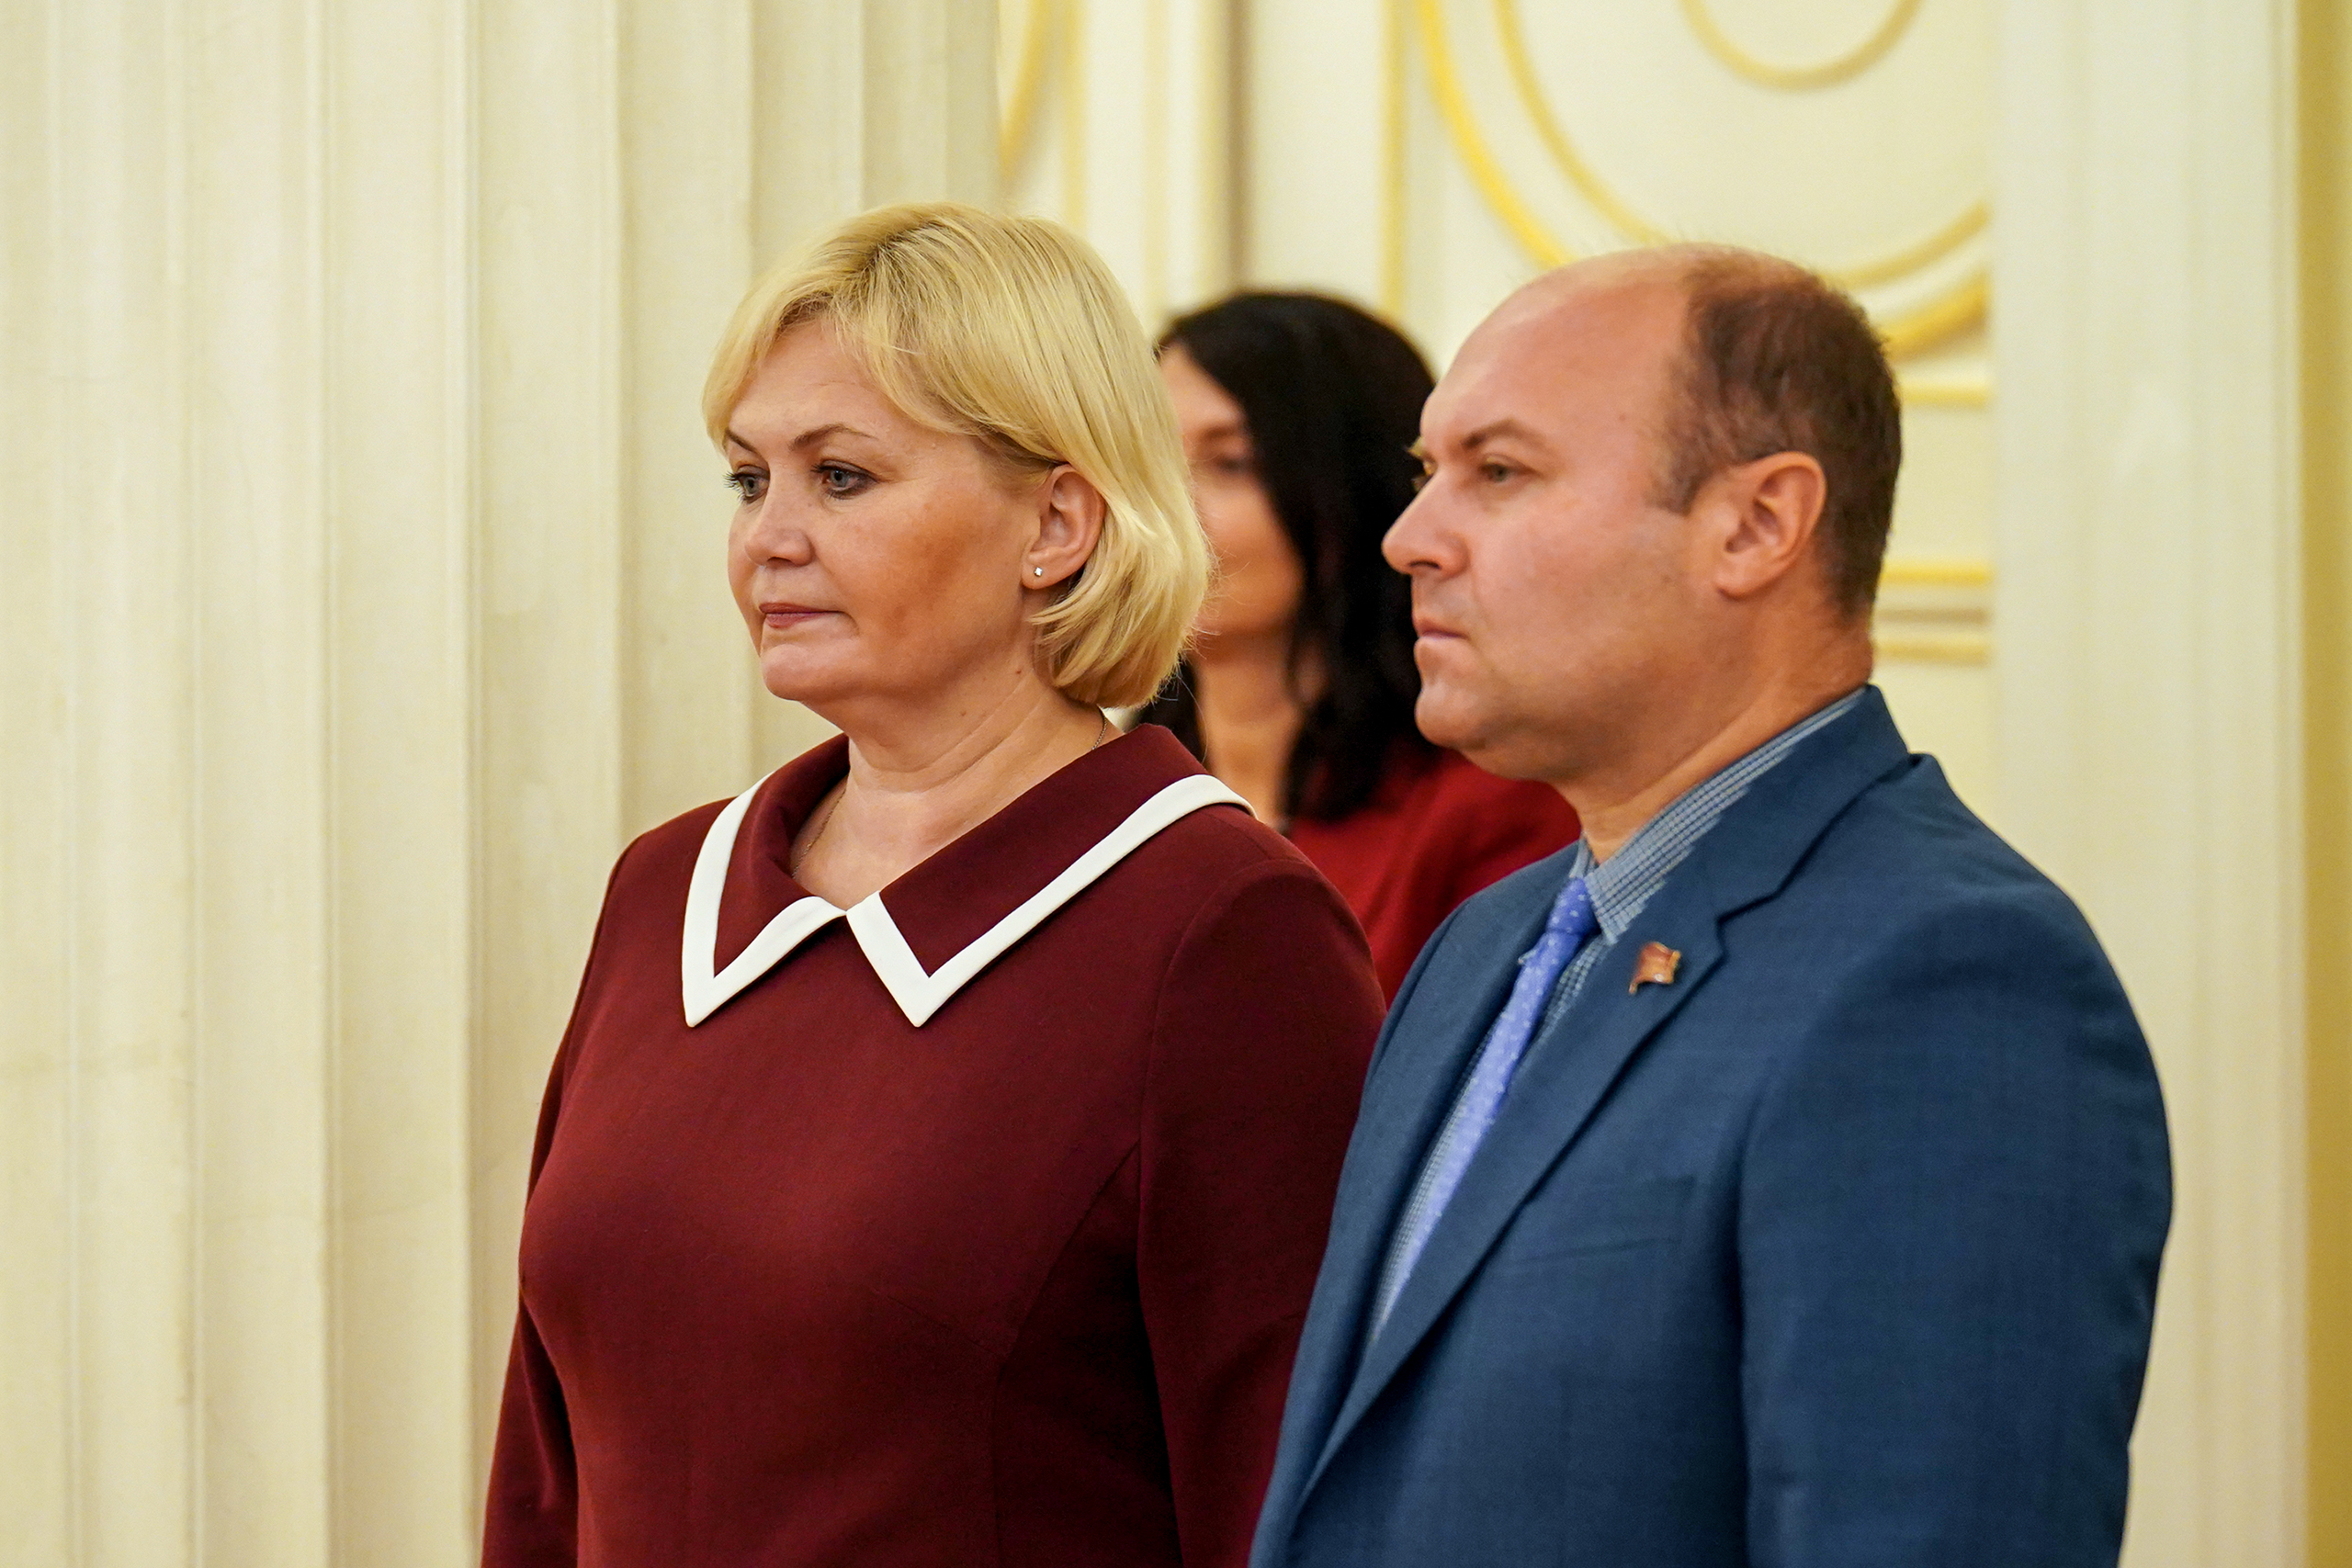 Петербургский парламент и Рязанская областная Дума подписали соглашение о сотрудничестве